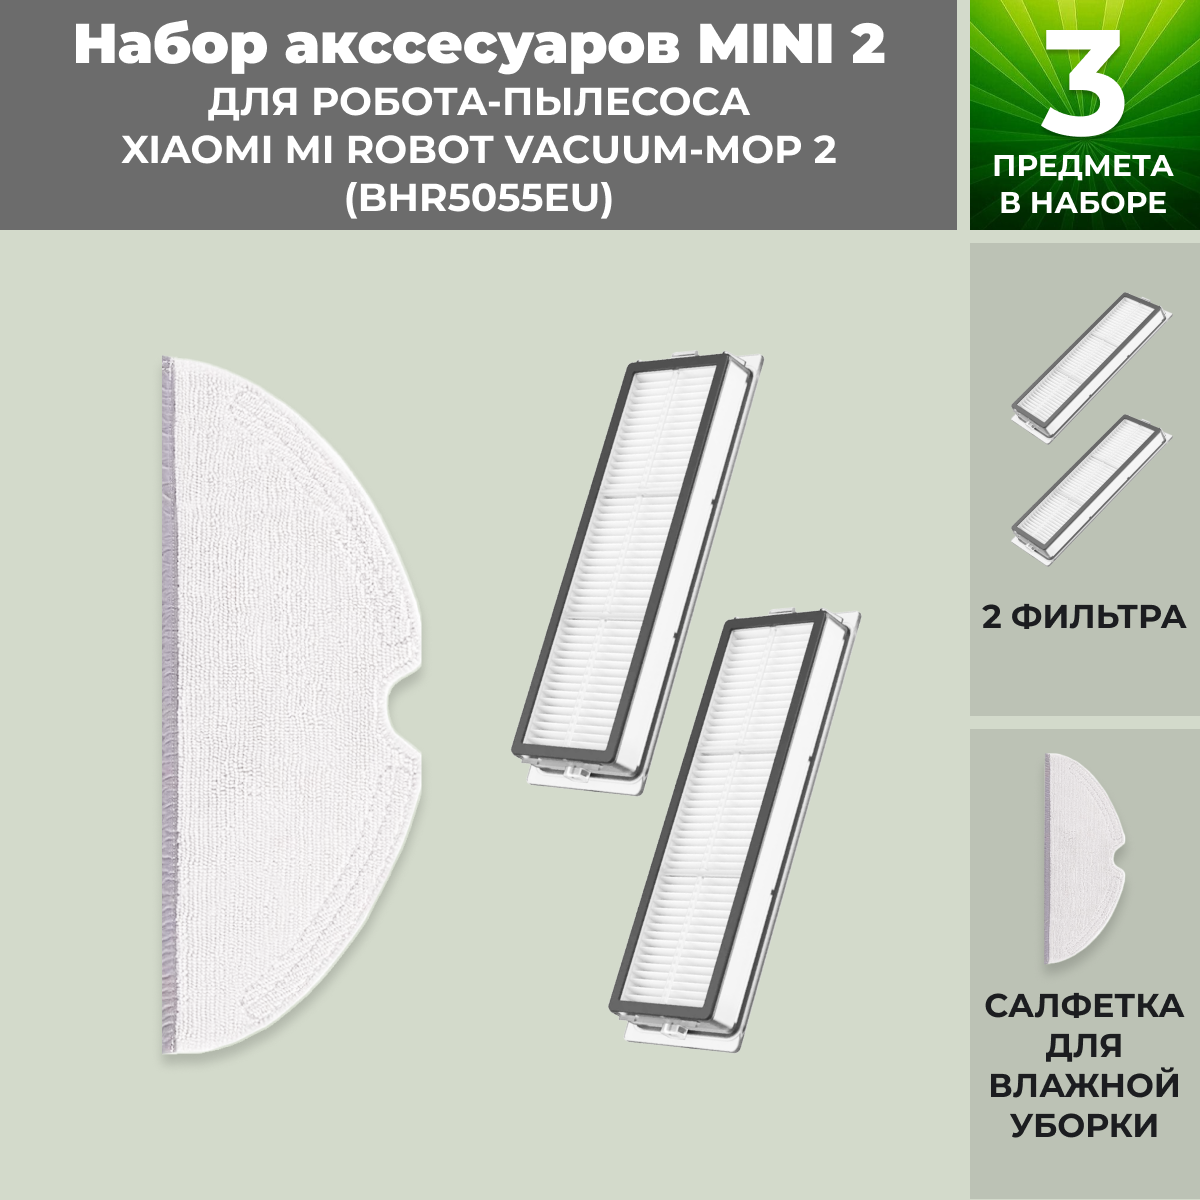 Набор аксессуаров Mini 2 для робота-пылесоса Xiaomi Mi Robot Vacuum-Mop 2 (BHR5055EU) 558635